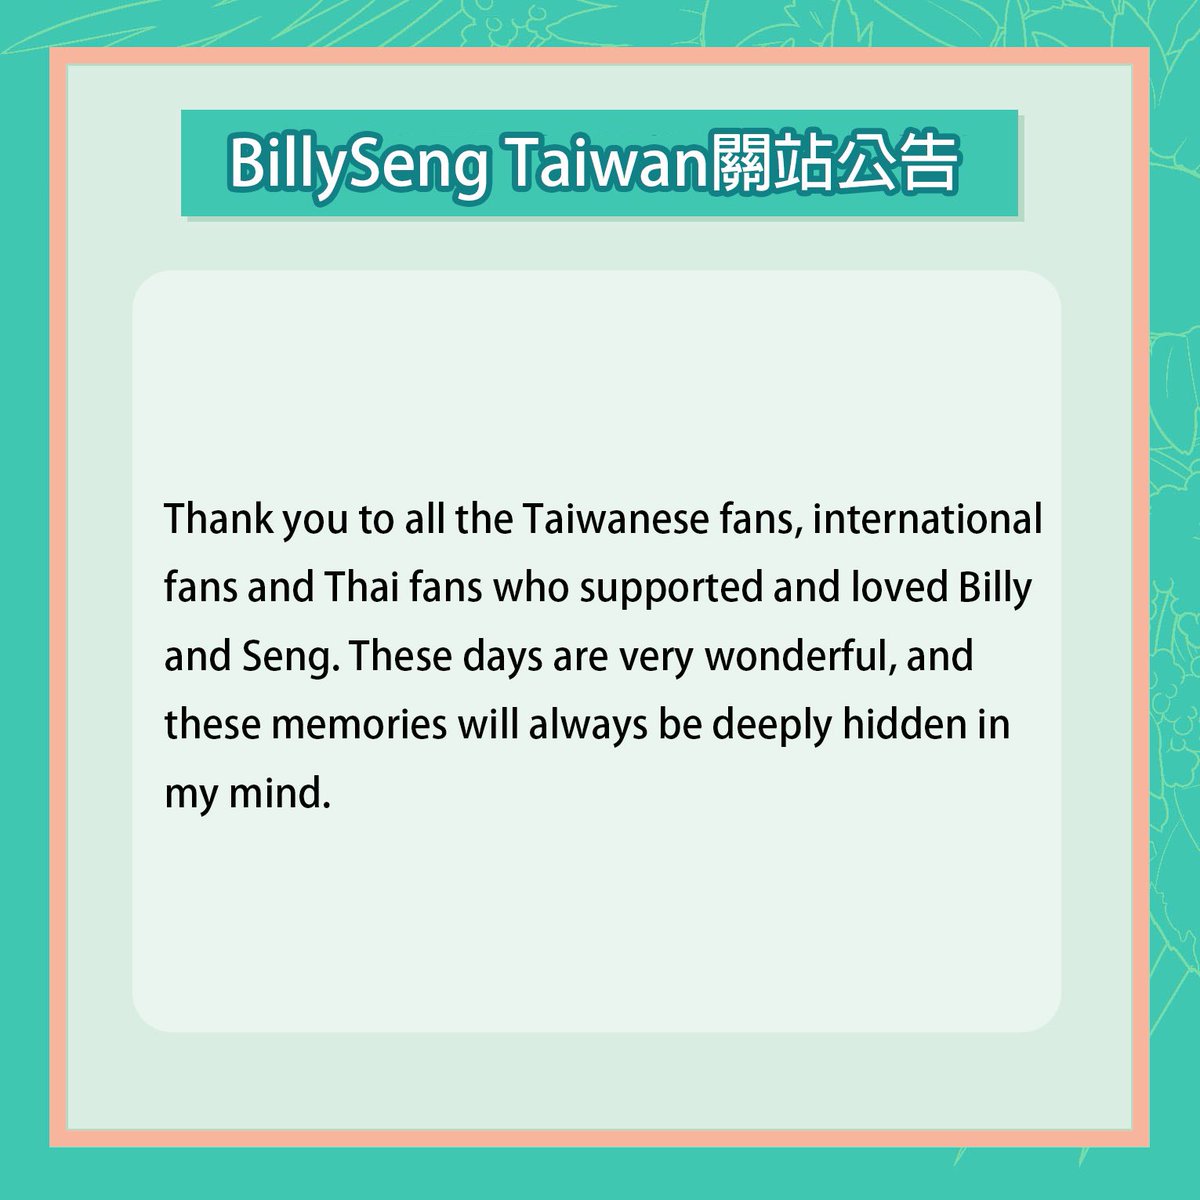 - BillySeng Taiwan 關站公告 -

經過一段時間思考後，考量到台灣站繼續經營上的各種不便及困難，很遺憾告知大家即日起 BillySeng Taiwan 將永久停止更新並關站。

#bbil1ypn #Seng_wichai #BillySeng